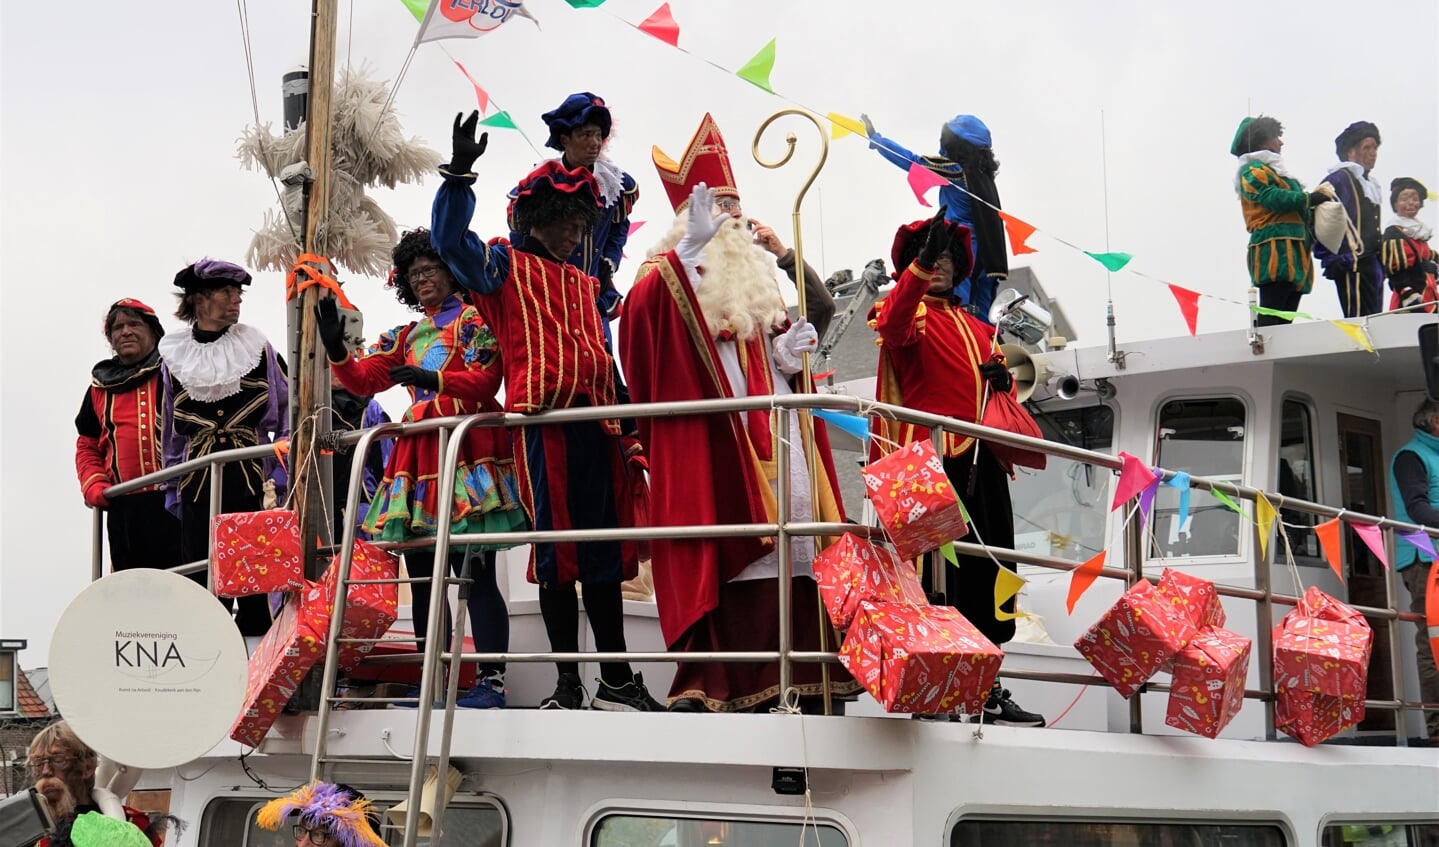 De pakjesboot komt aan met Sinterklaas en zijn helpers op de voorplecht.